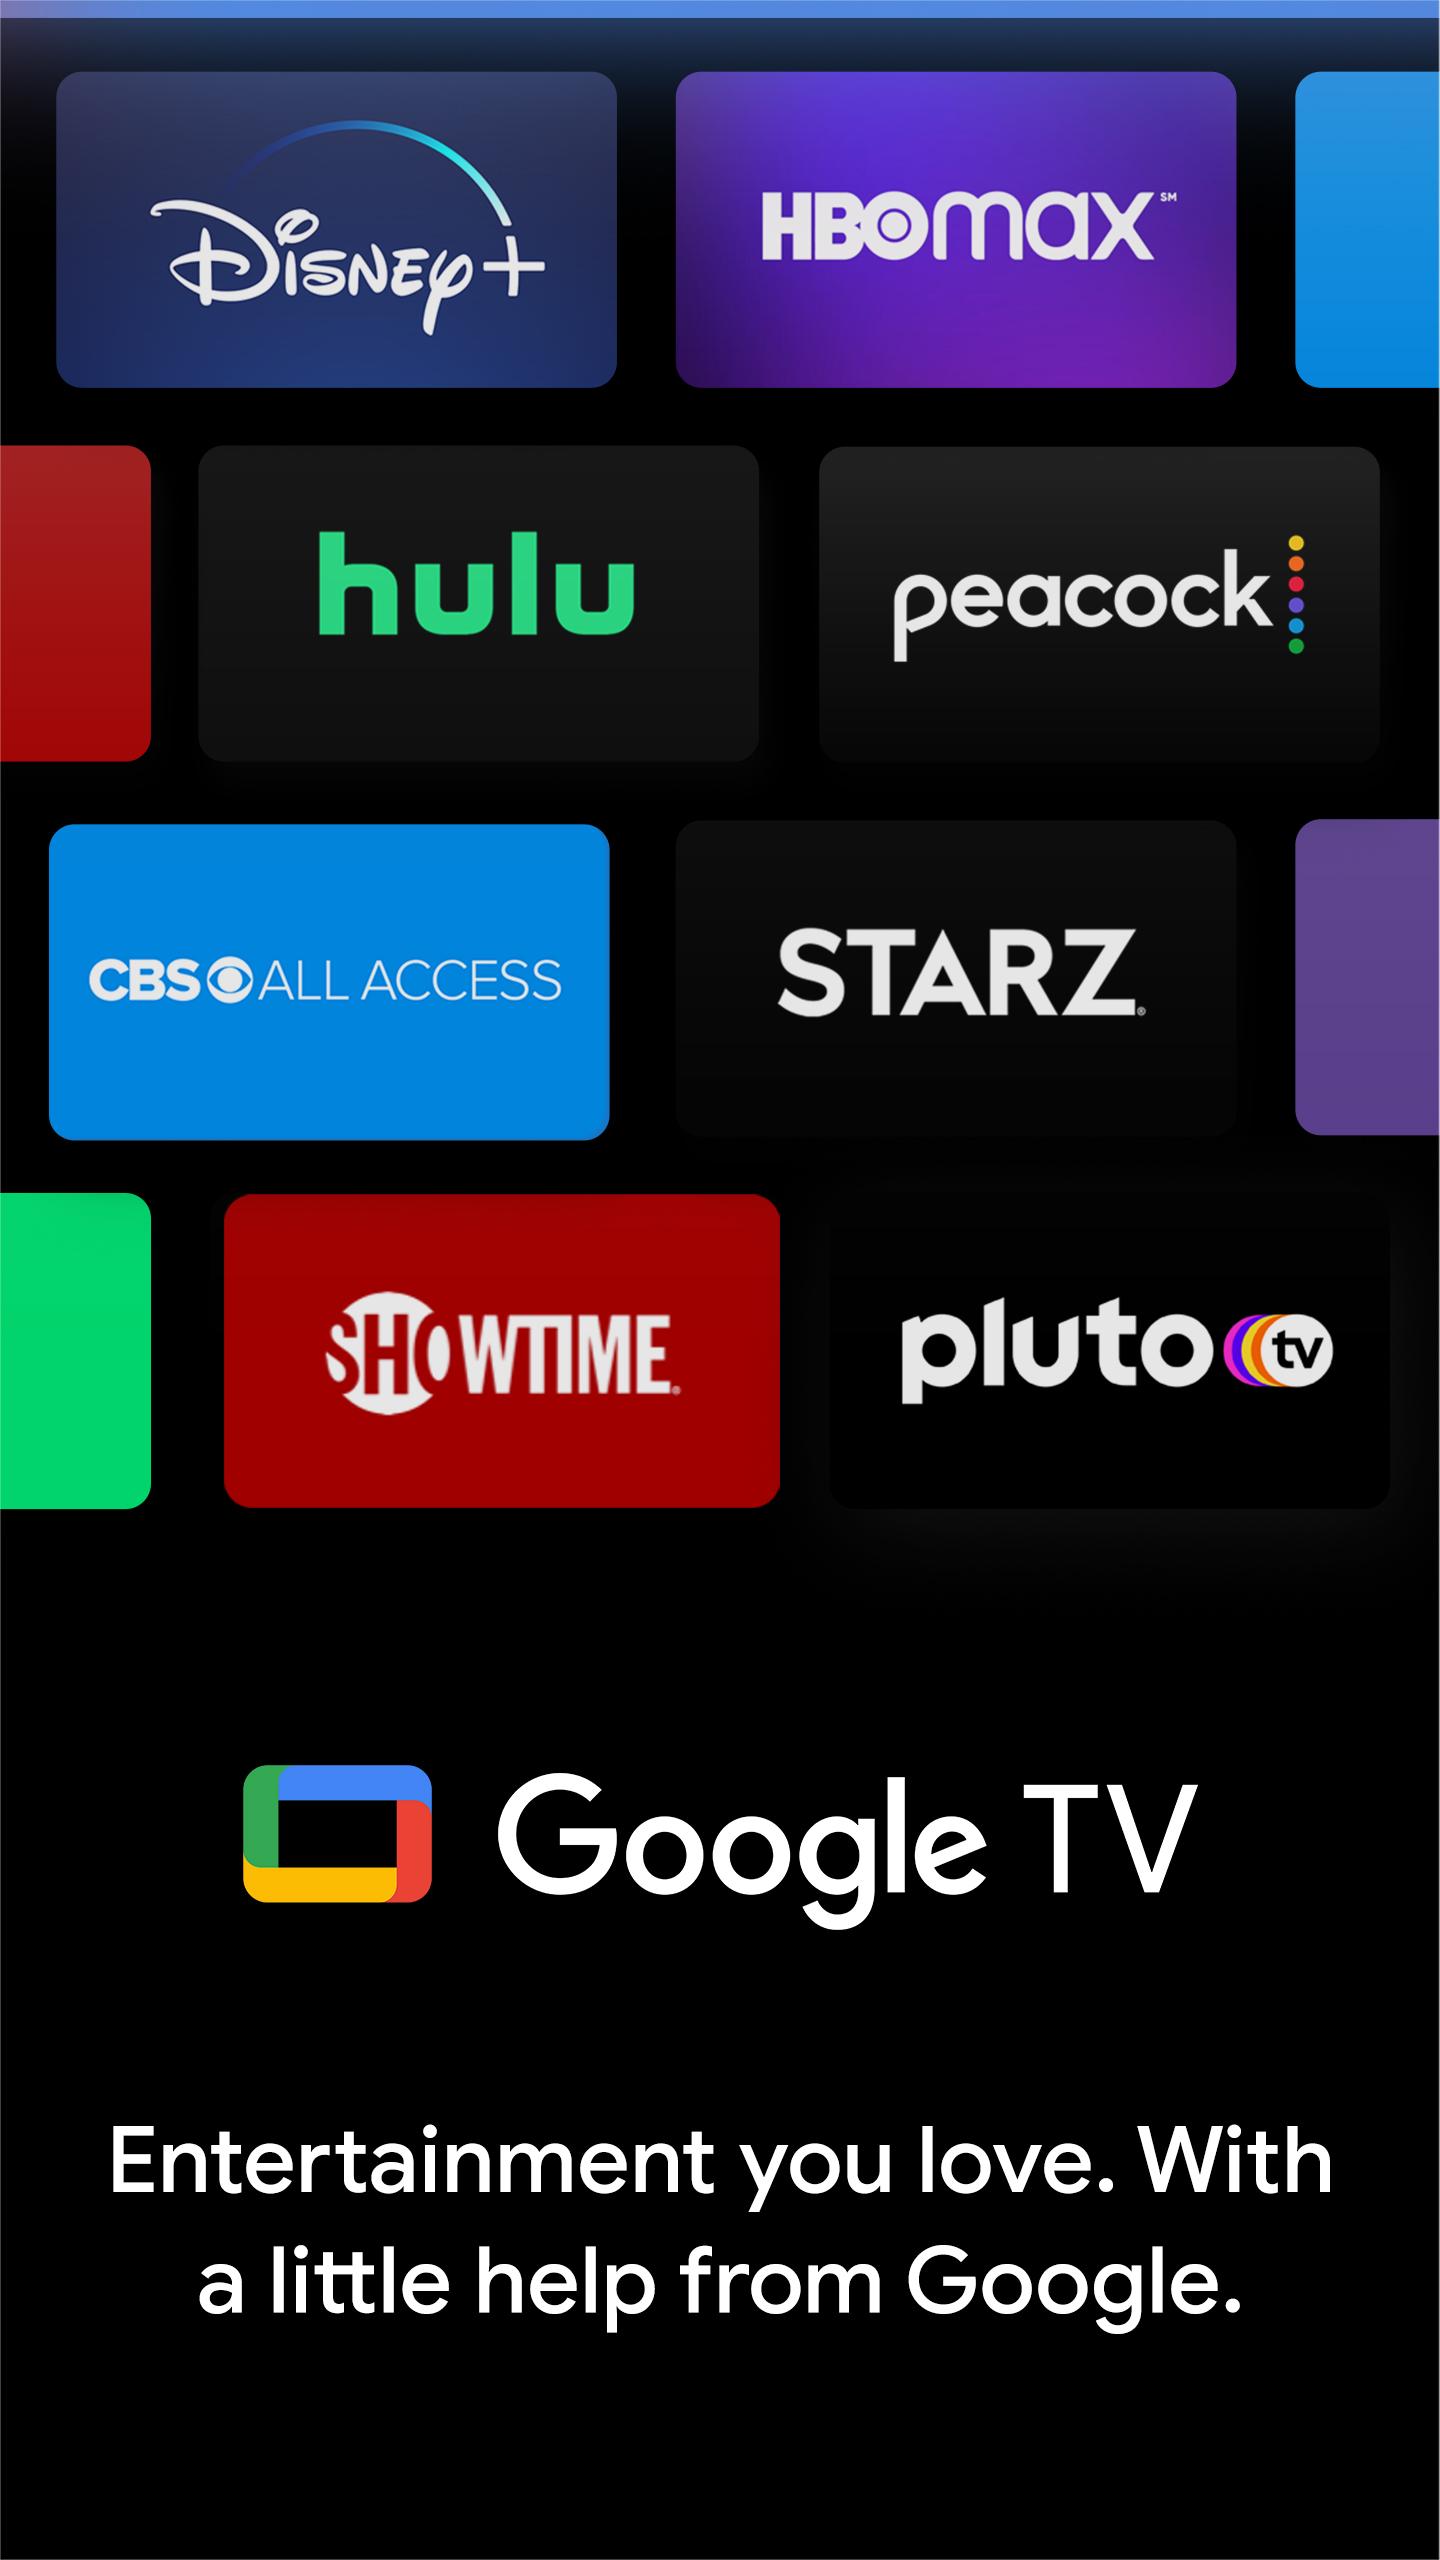 Google TV (previously Play Movies & TV) 4.24.13 Screenshot 1